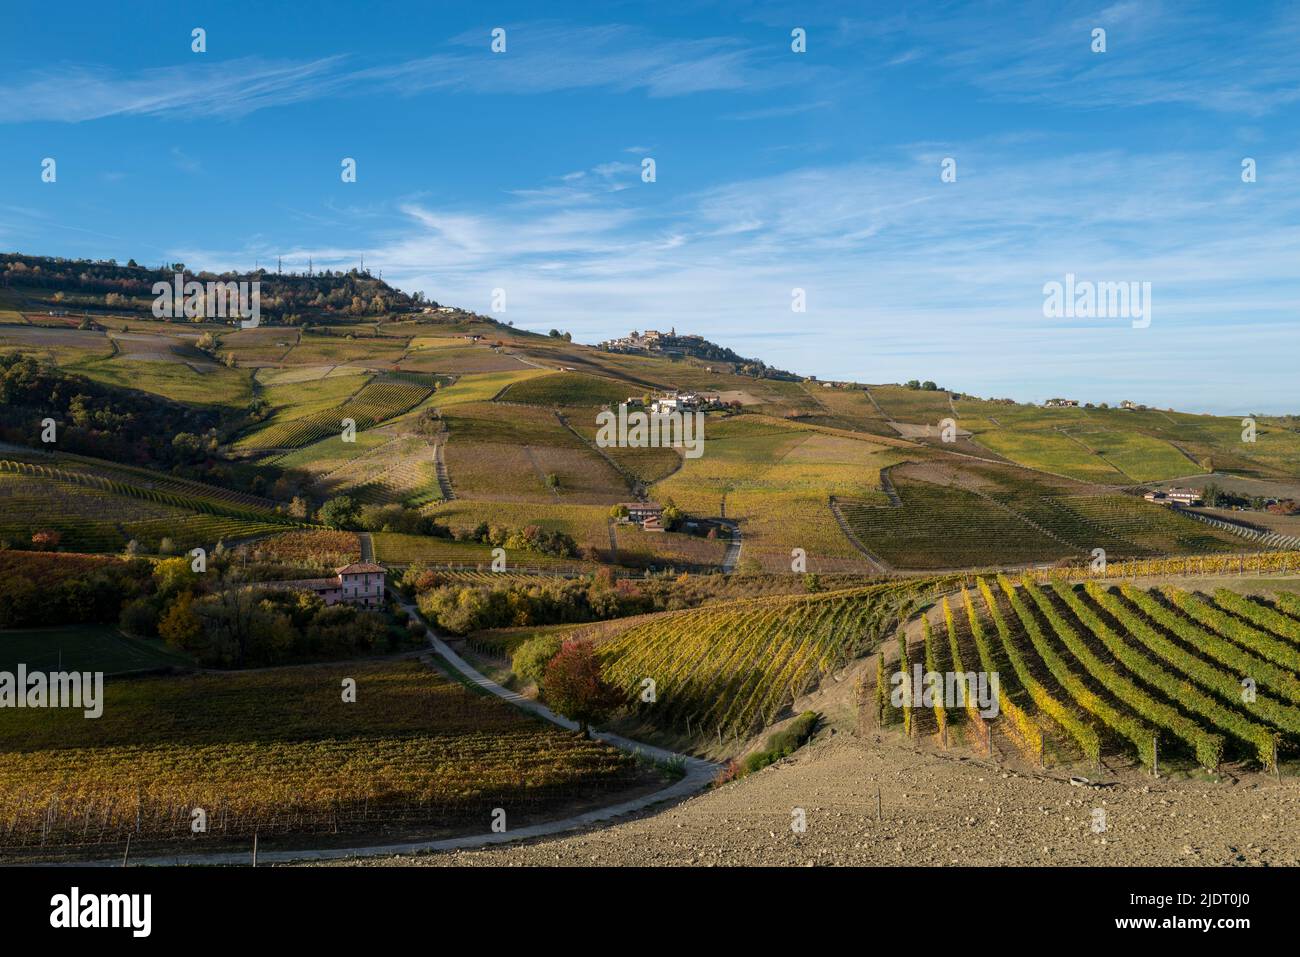 Herbstlicht in den Weinbergen von Barolo, Cuneo inmitten der sanften Hügel und Dörfer auf den Hügeln erste Spur von Herbst in Weinland. Stockfoto